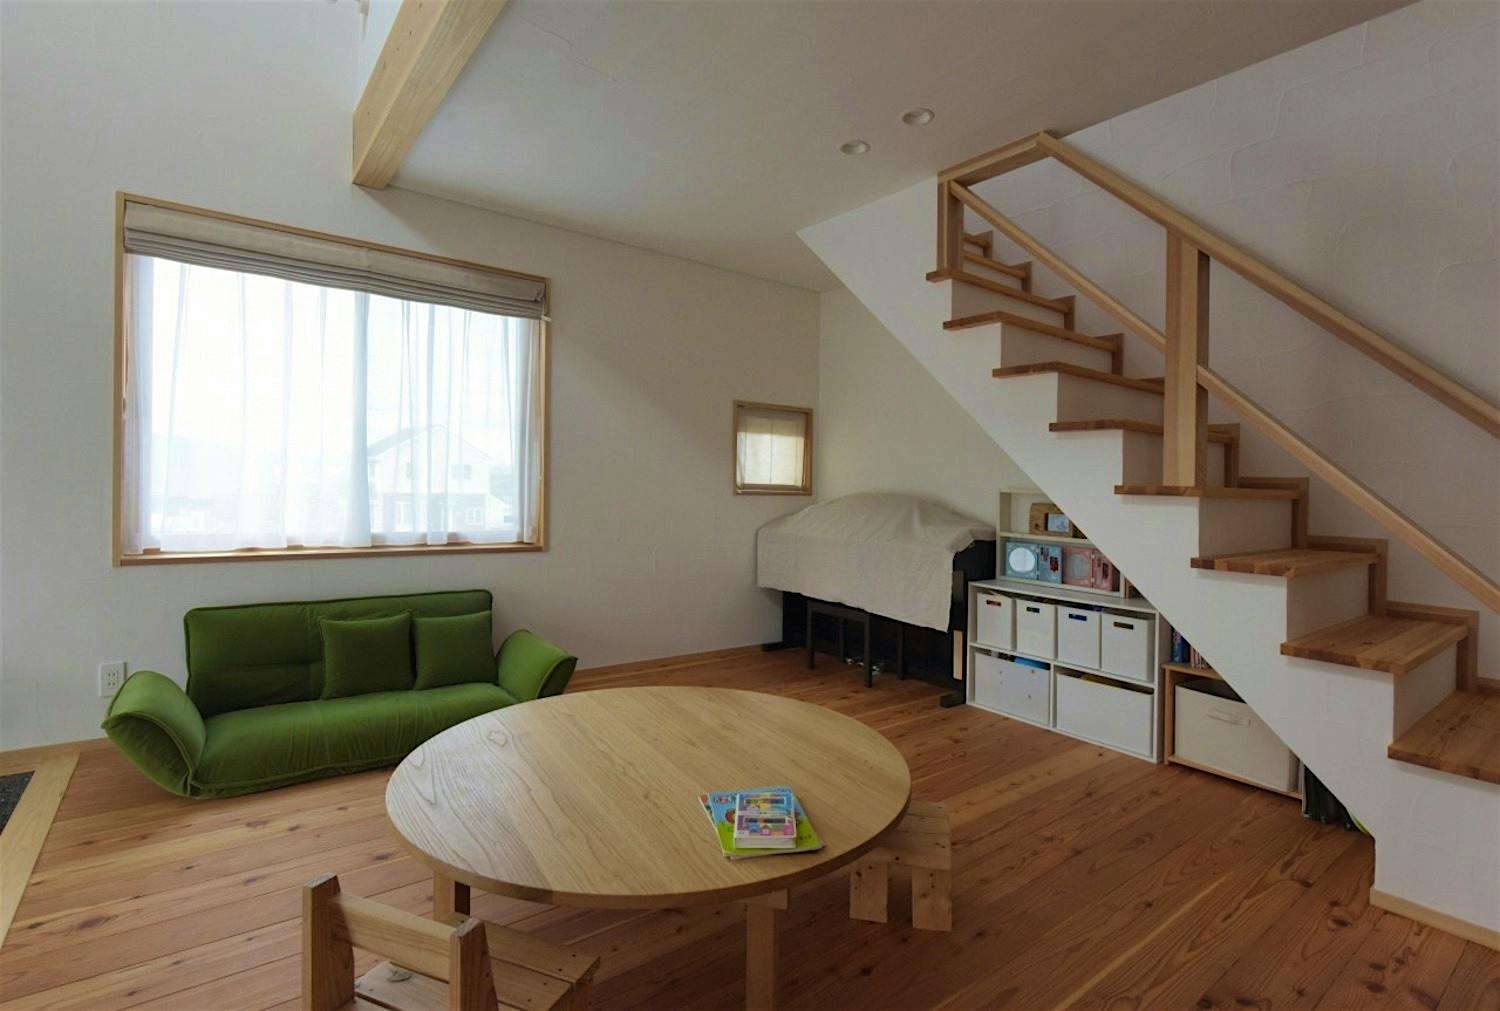 無駄を排除したシンプルな空間を理想としたS様邸の家づくり。珪藻土の白を基調としたスッキリした空間となった。